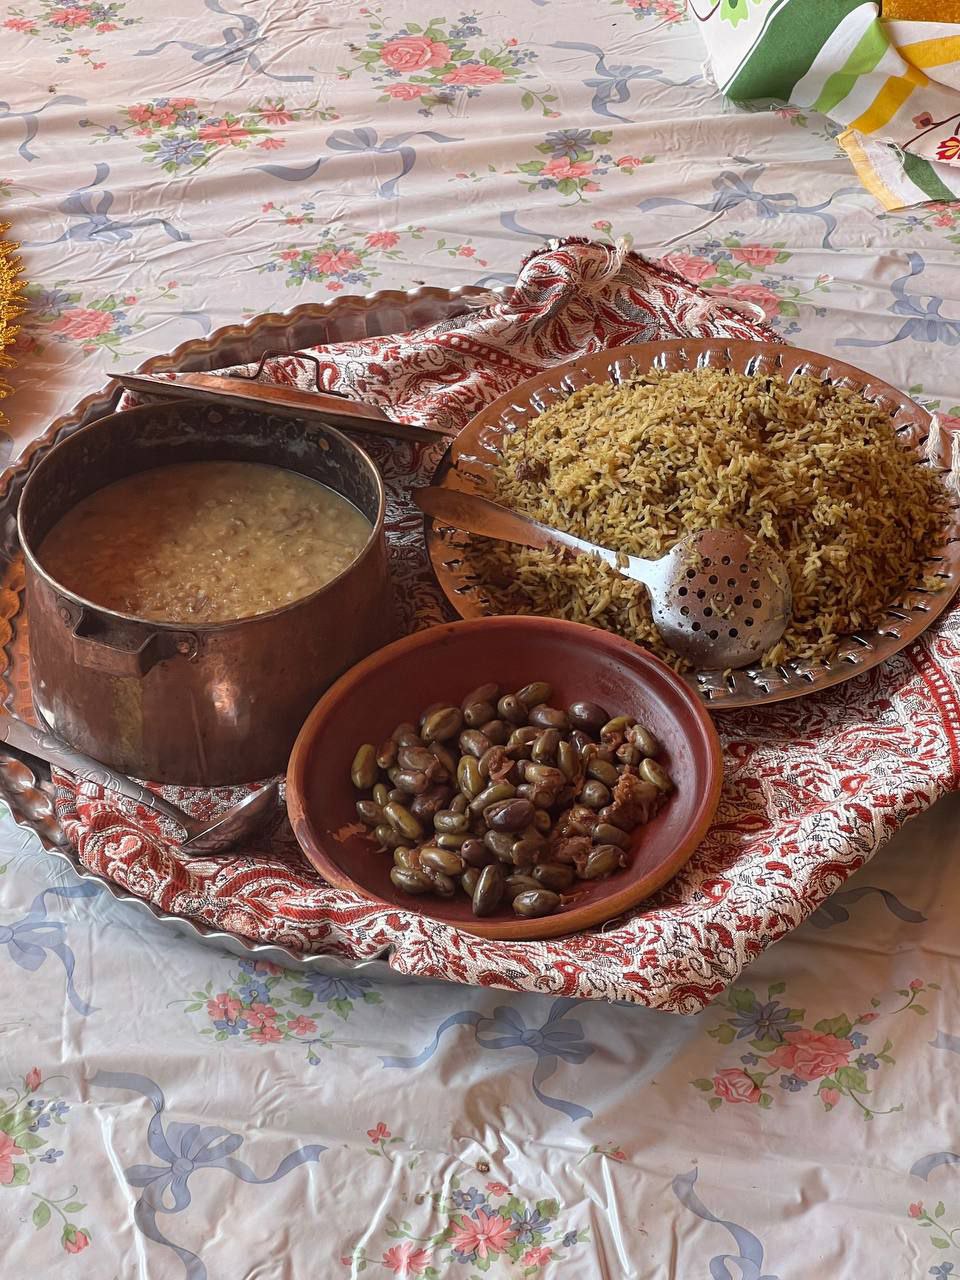 جشنواره غذاهای سنتی شهرستان رودبار